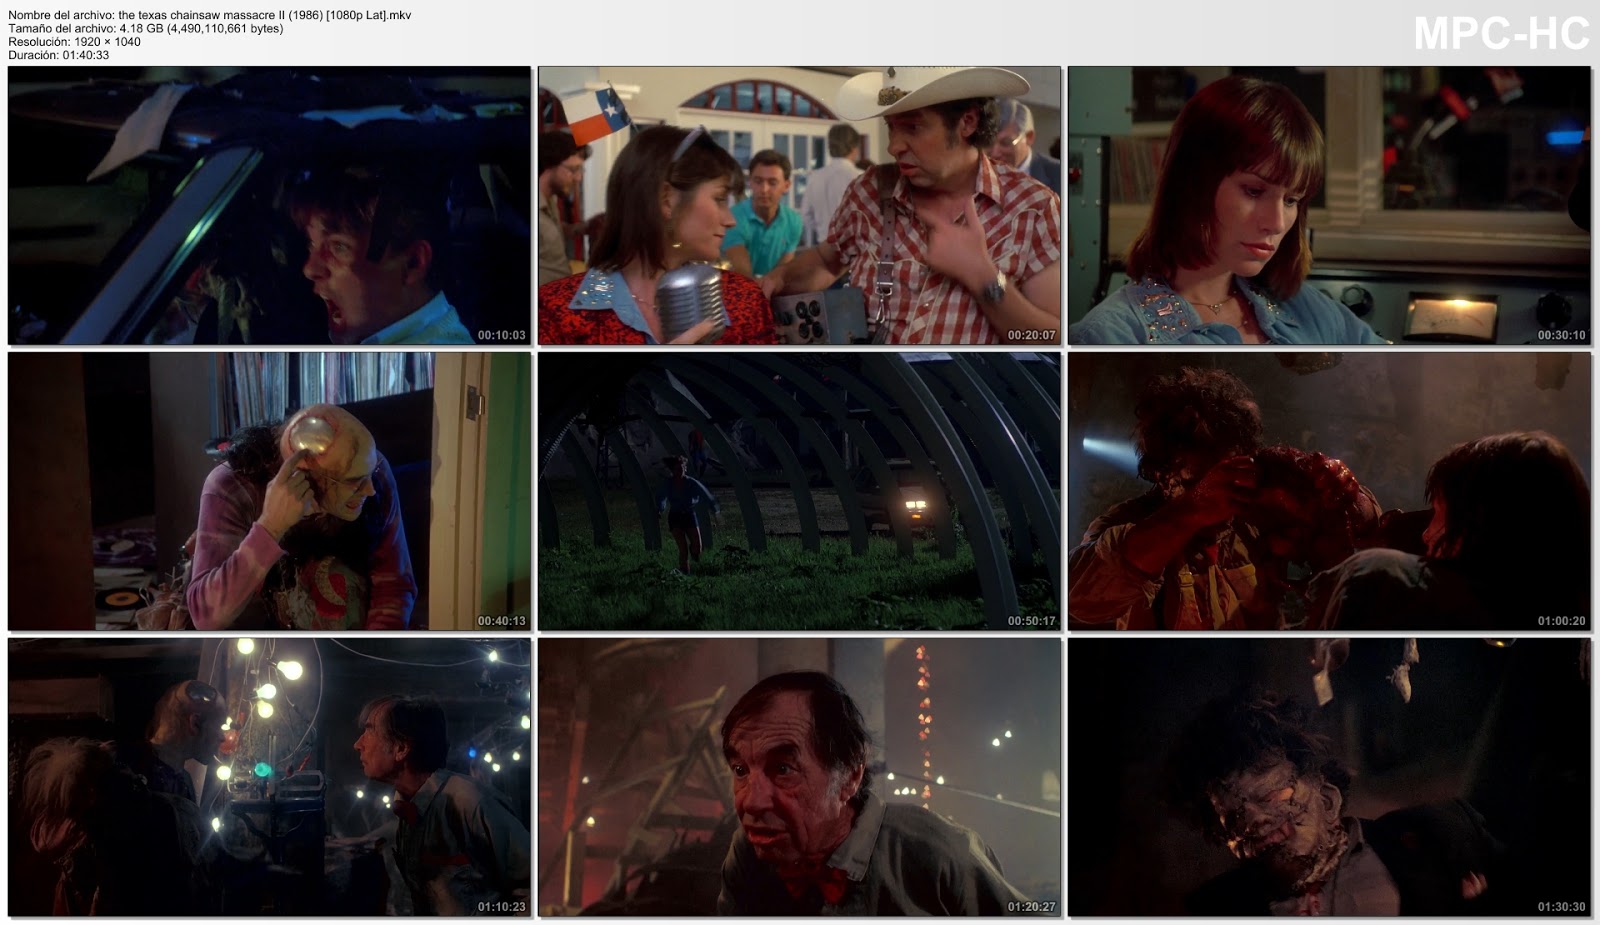 La Masacre de Texas II (1986)|1080p|Esp Latino|Mega